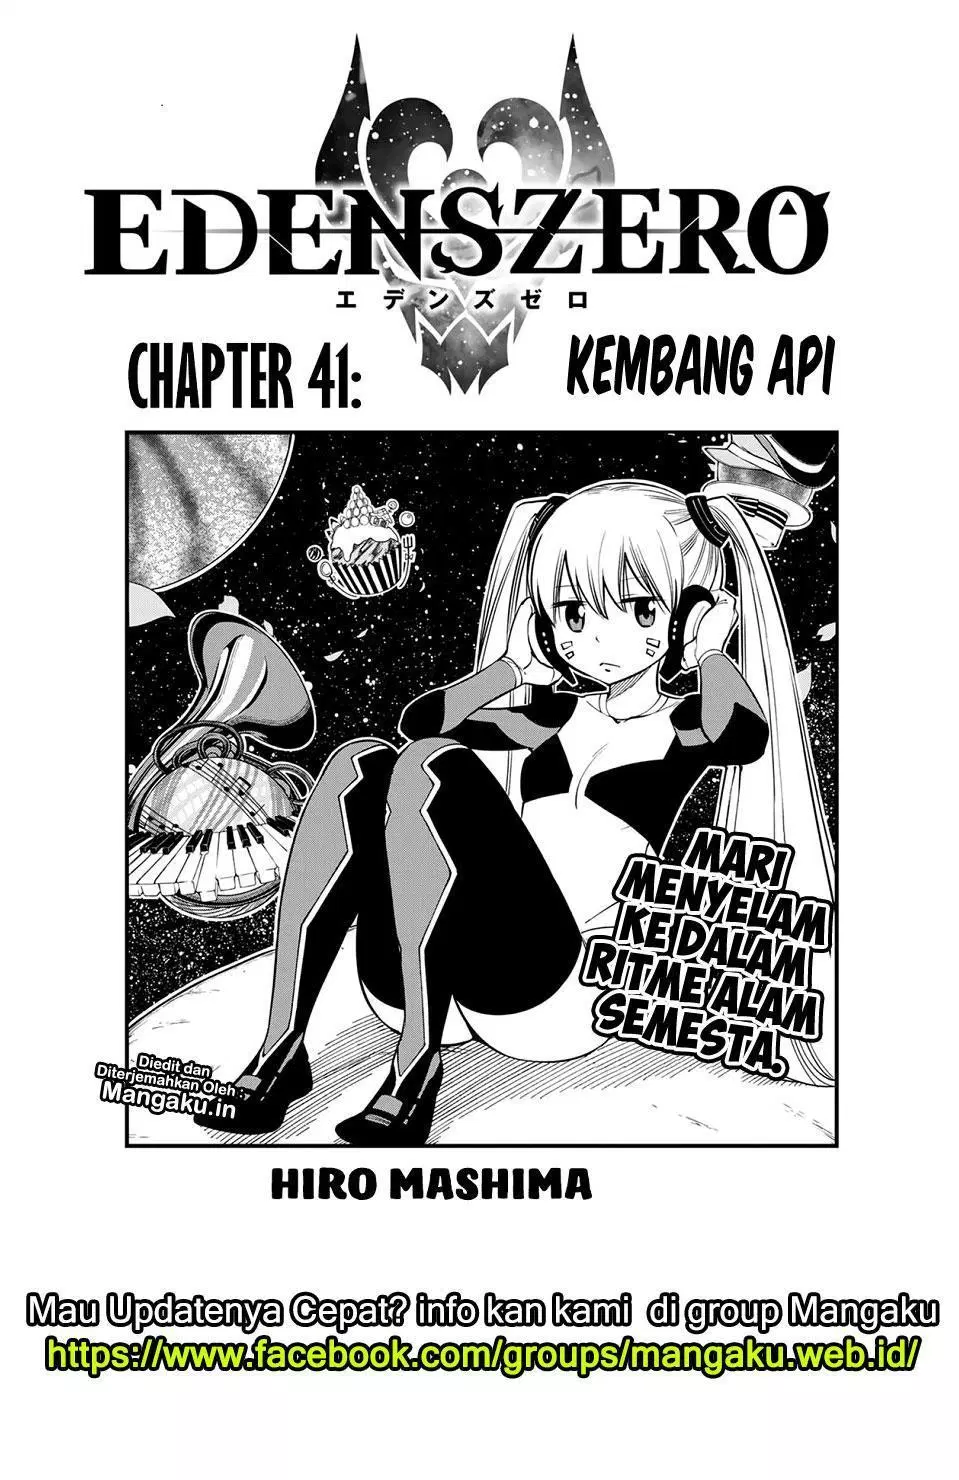 Eden’s Zero Chapter 41